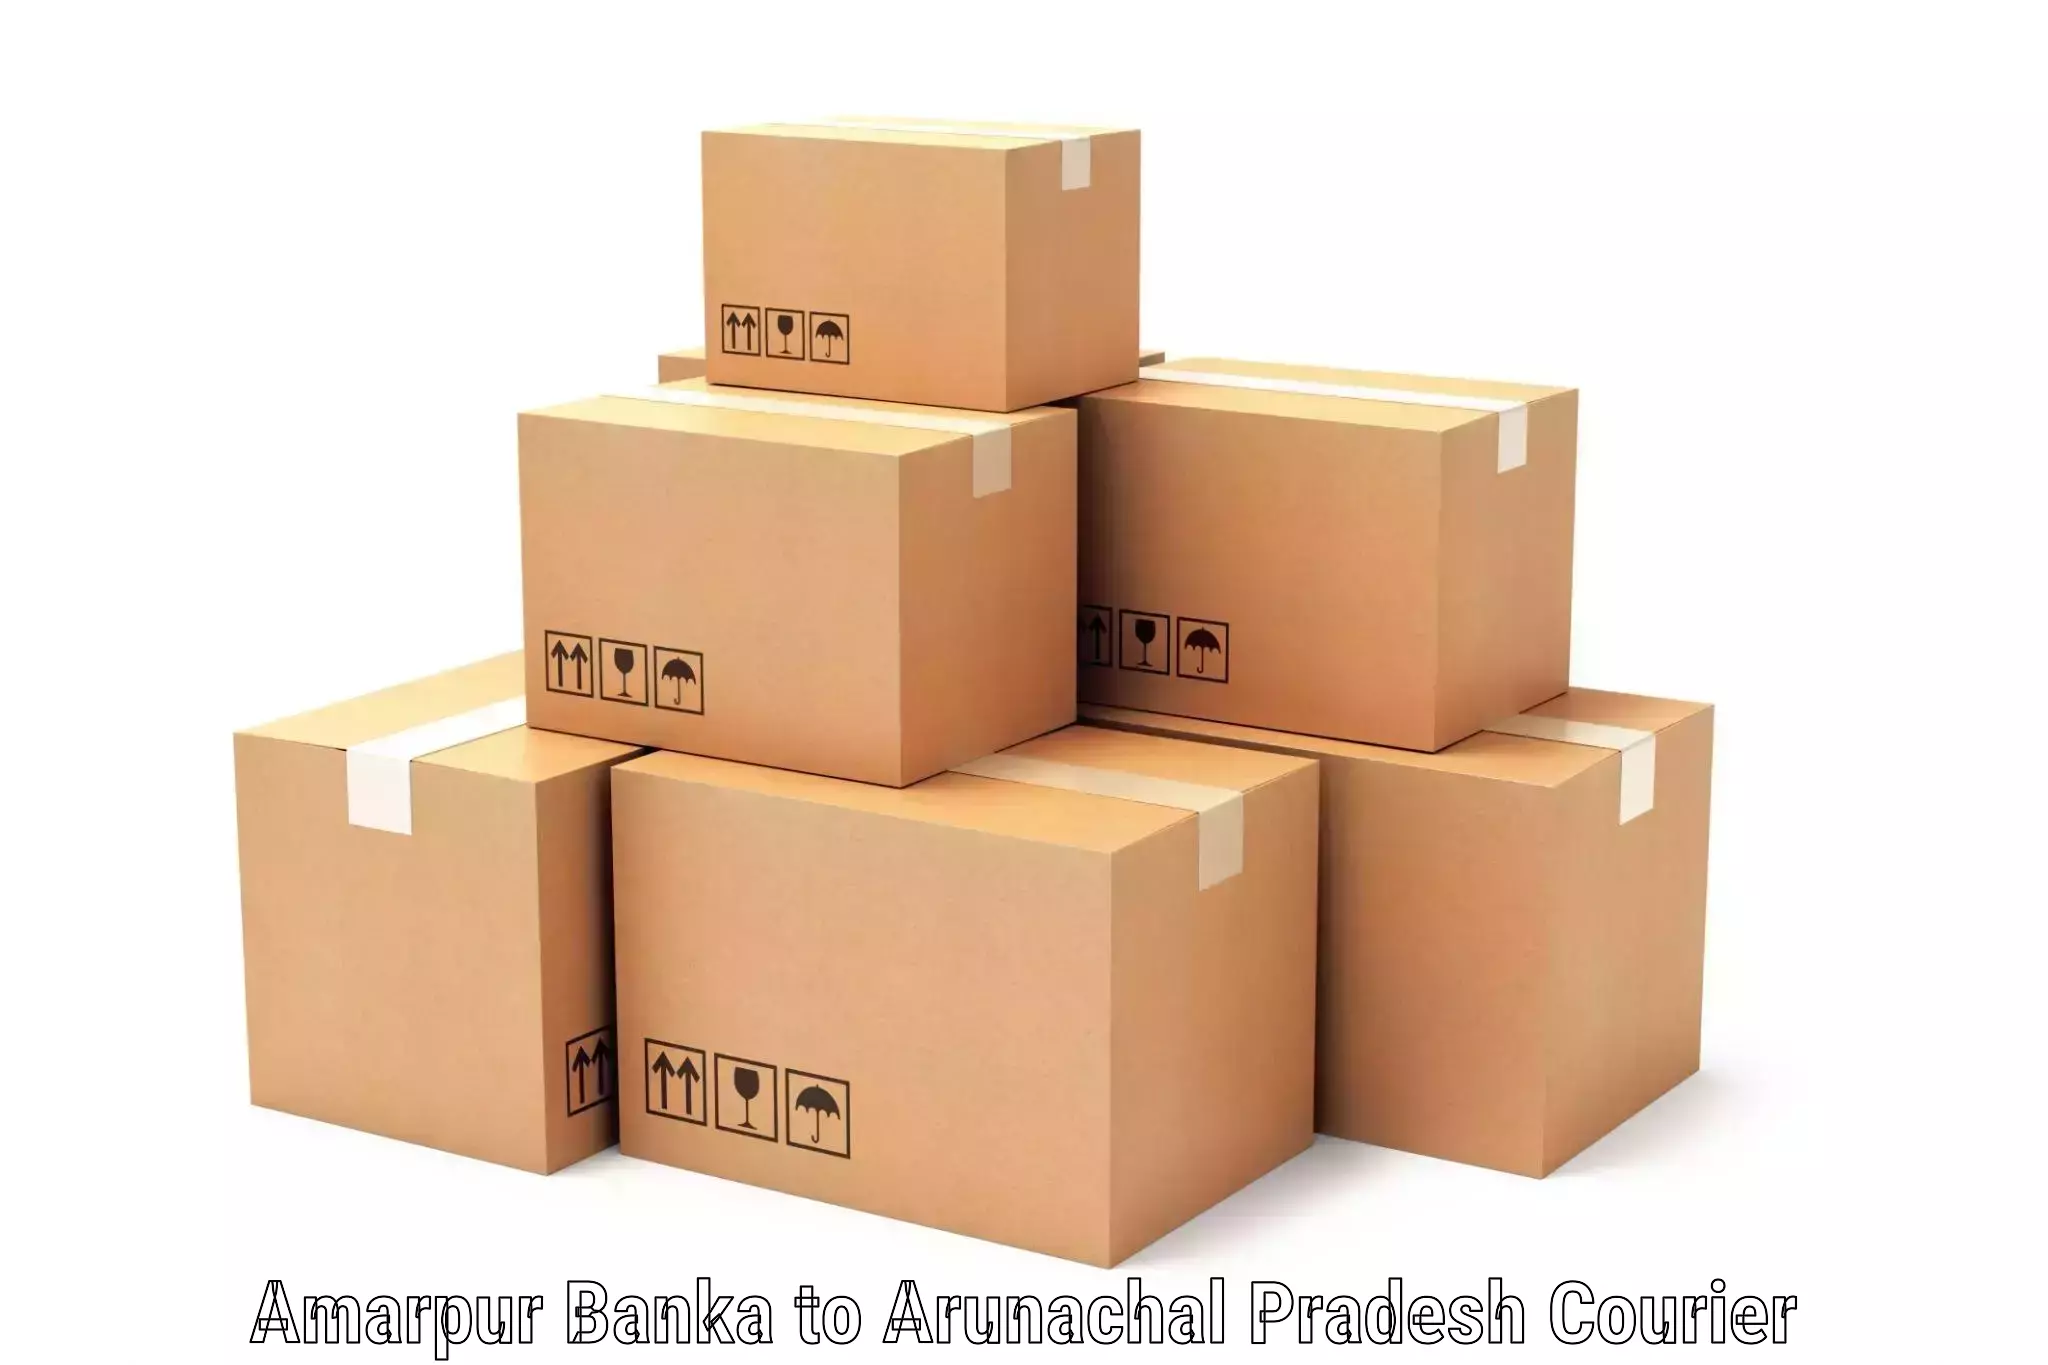 Speedy delivery service Amarpur Banka to Arunachal Pradesh